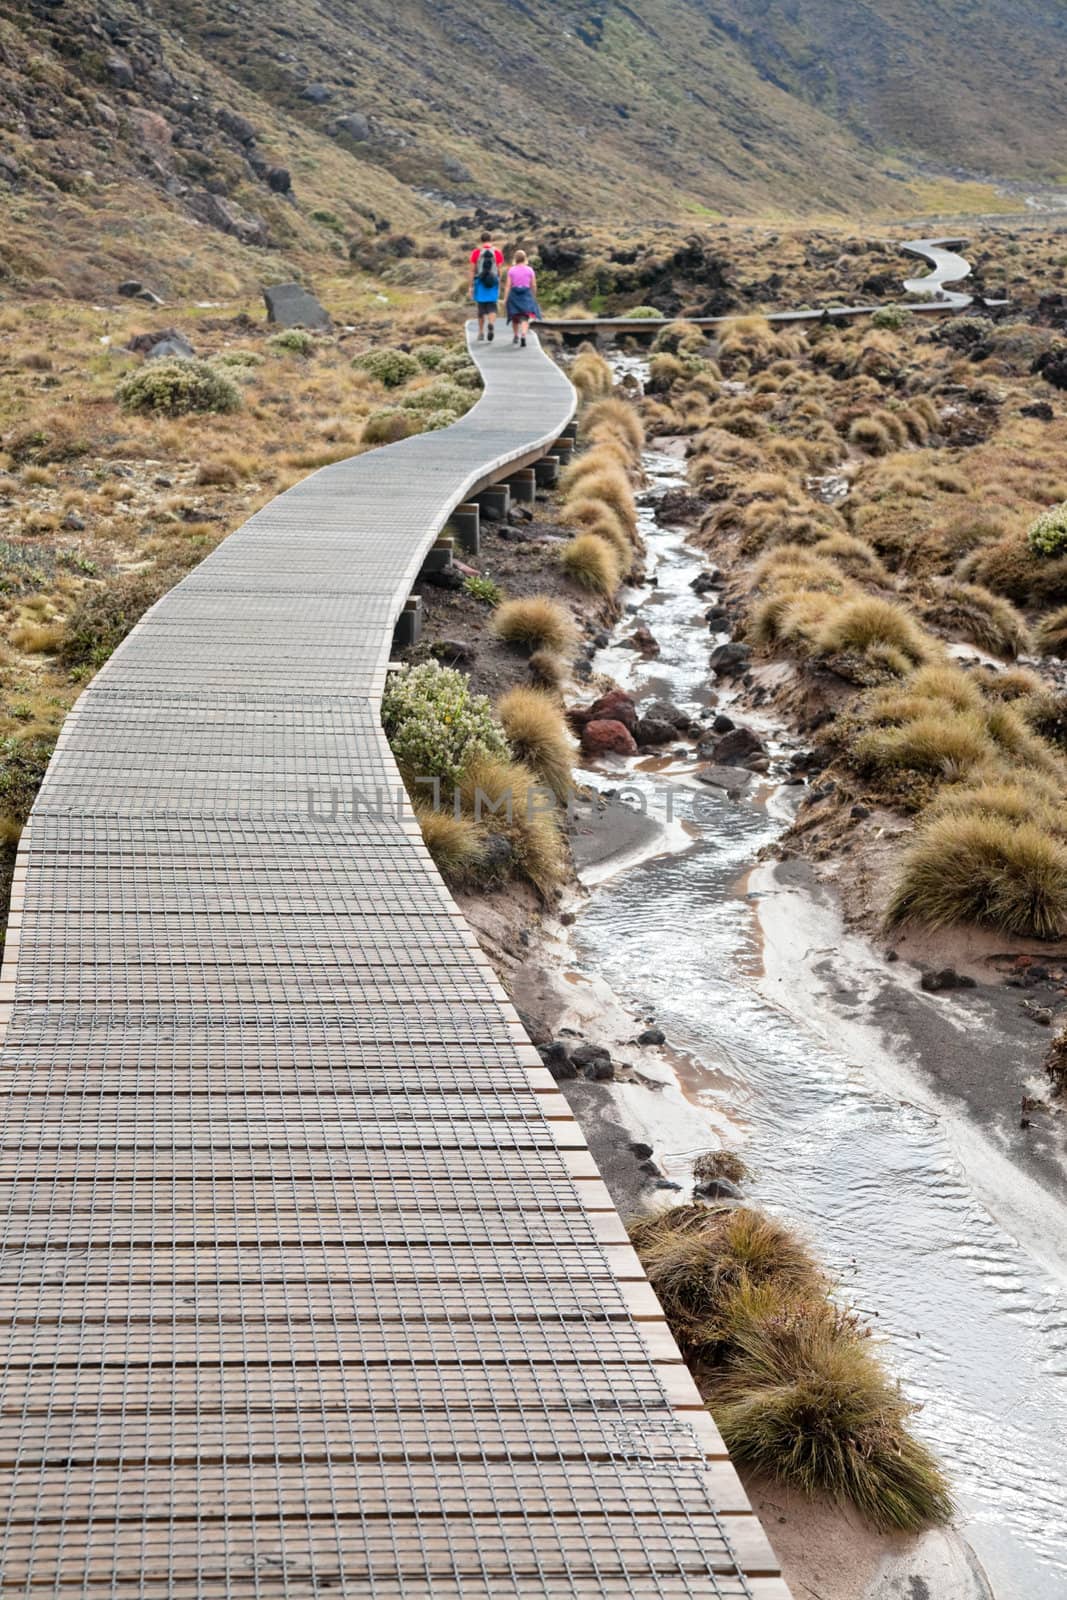 Couple walking on public track at Tongariro National Park, New Zealand